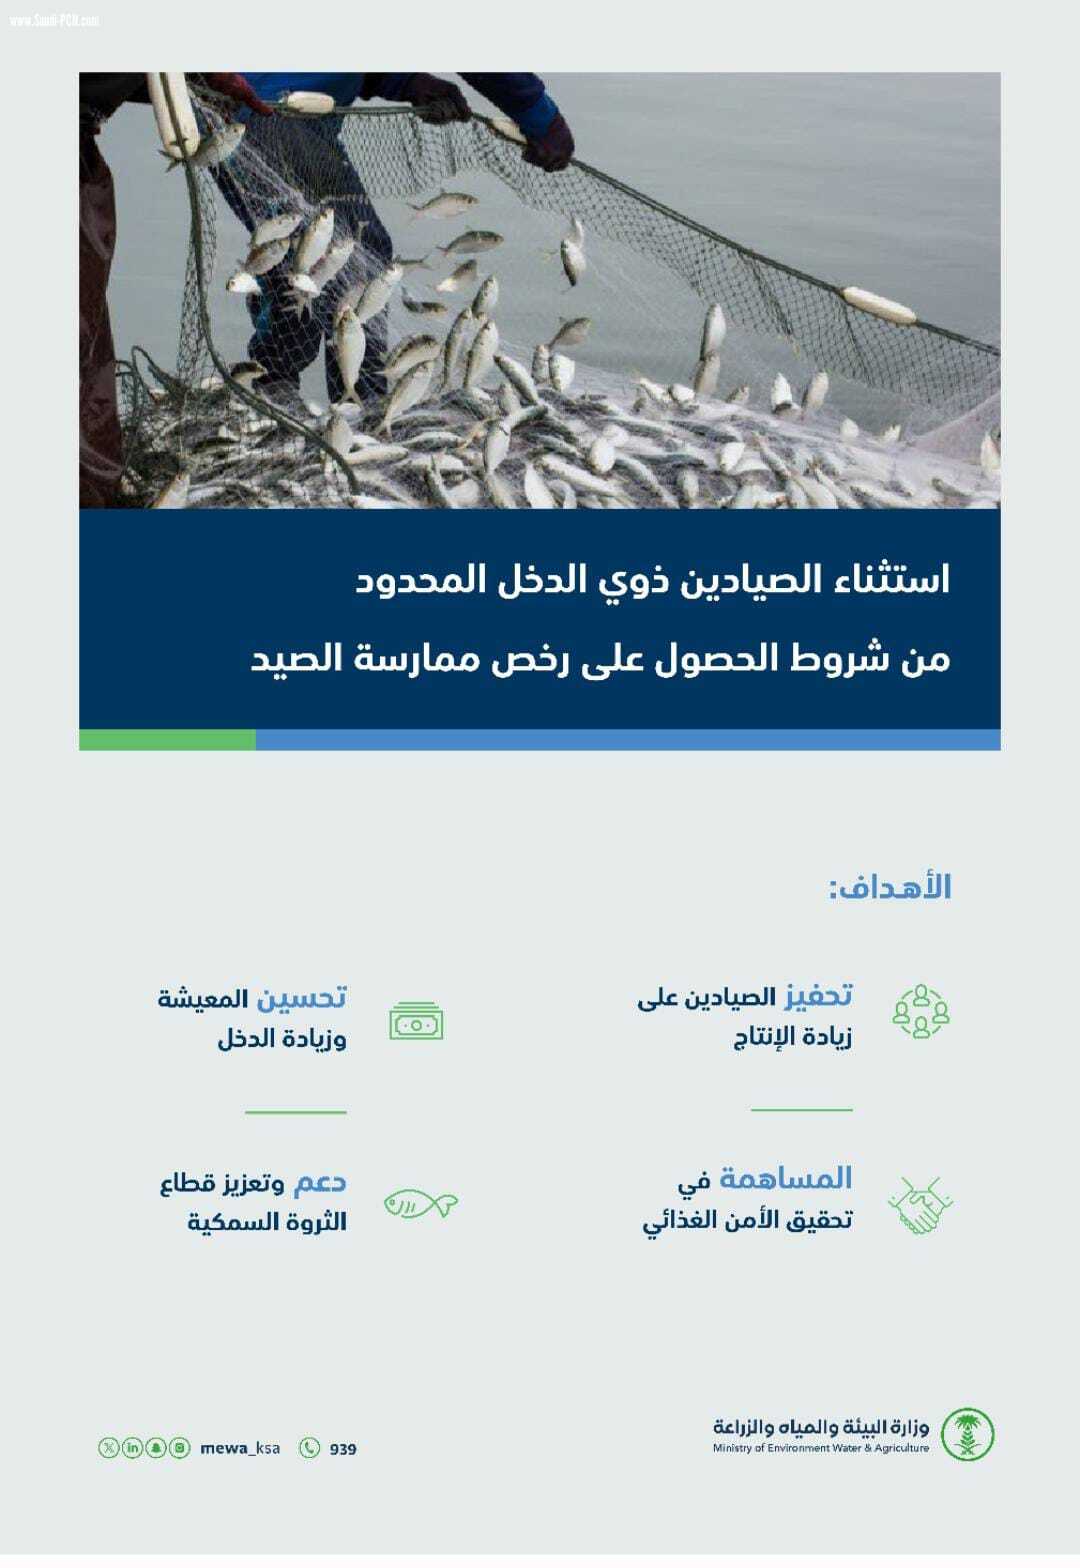 البيئة تستثني الصيادين ذوي الدخل المحدود من شروط الحصول على رخص ممارسة الصيد